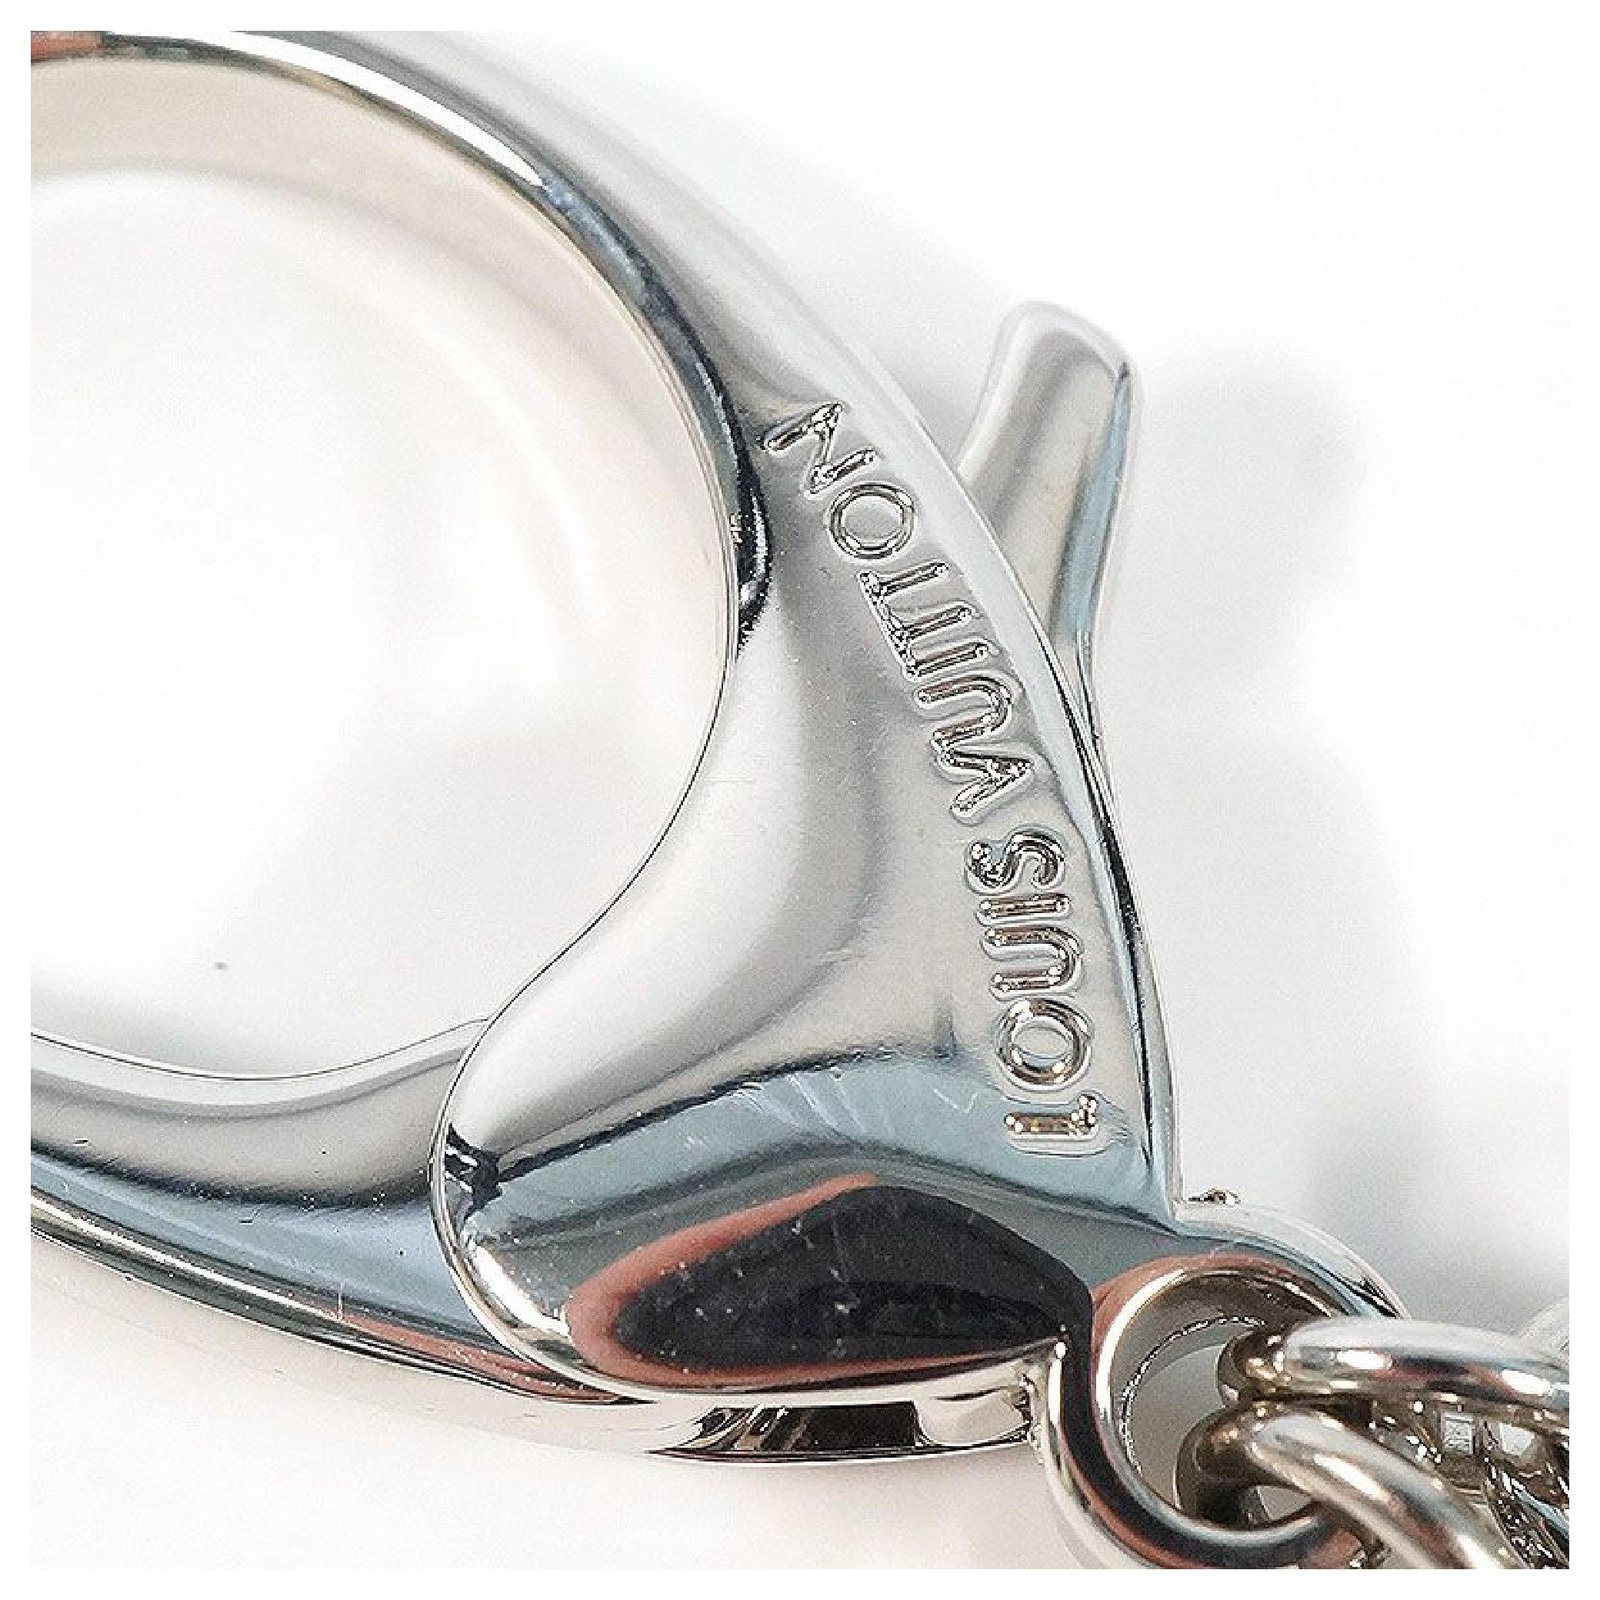 Louis Vuitton M65085 Key Chain holder Bag Charm White Silver